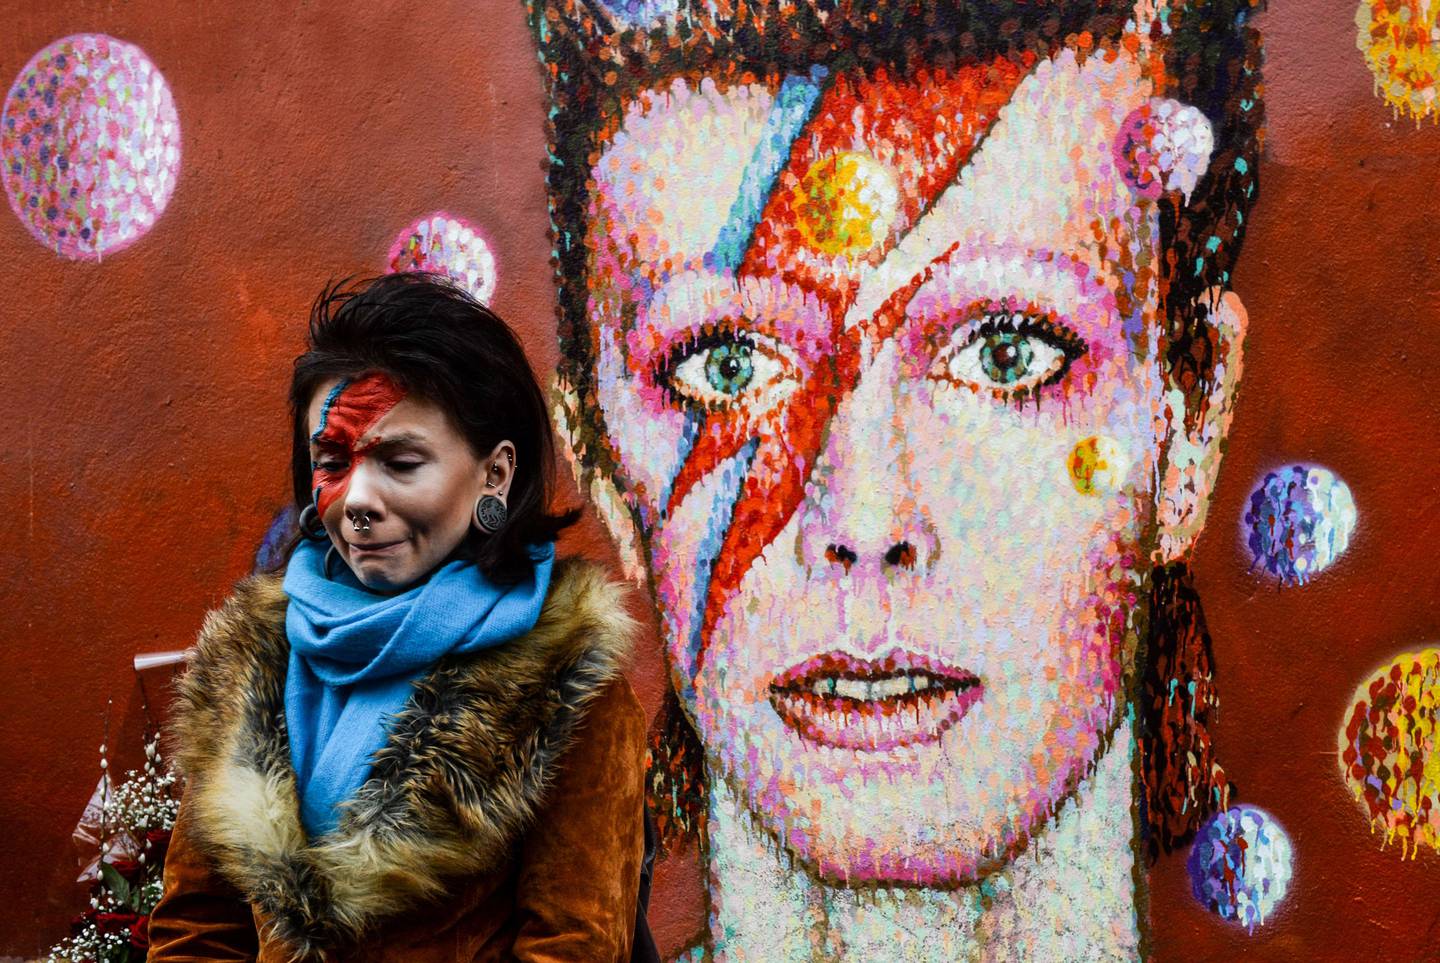 David Bowie recebe escultura em areia em Portugal